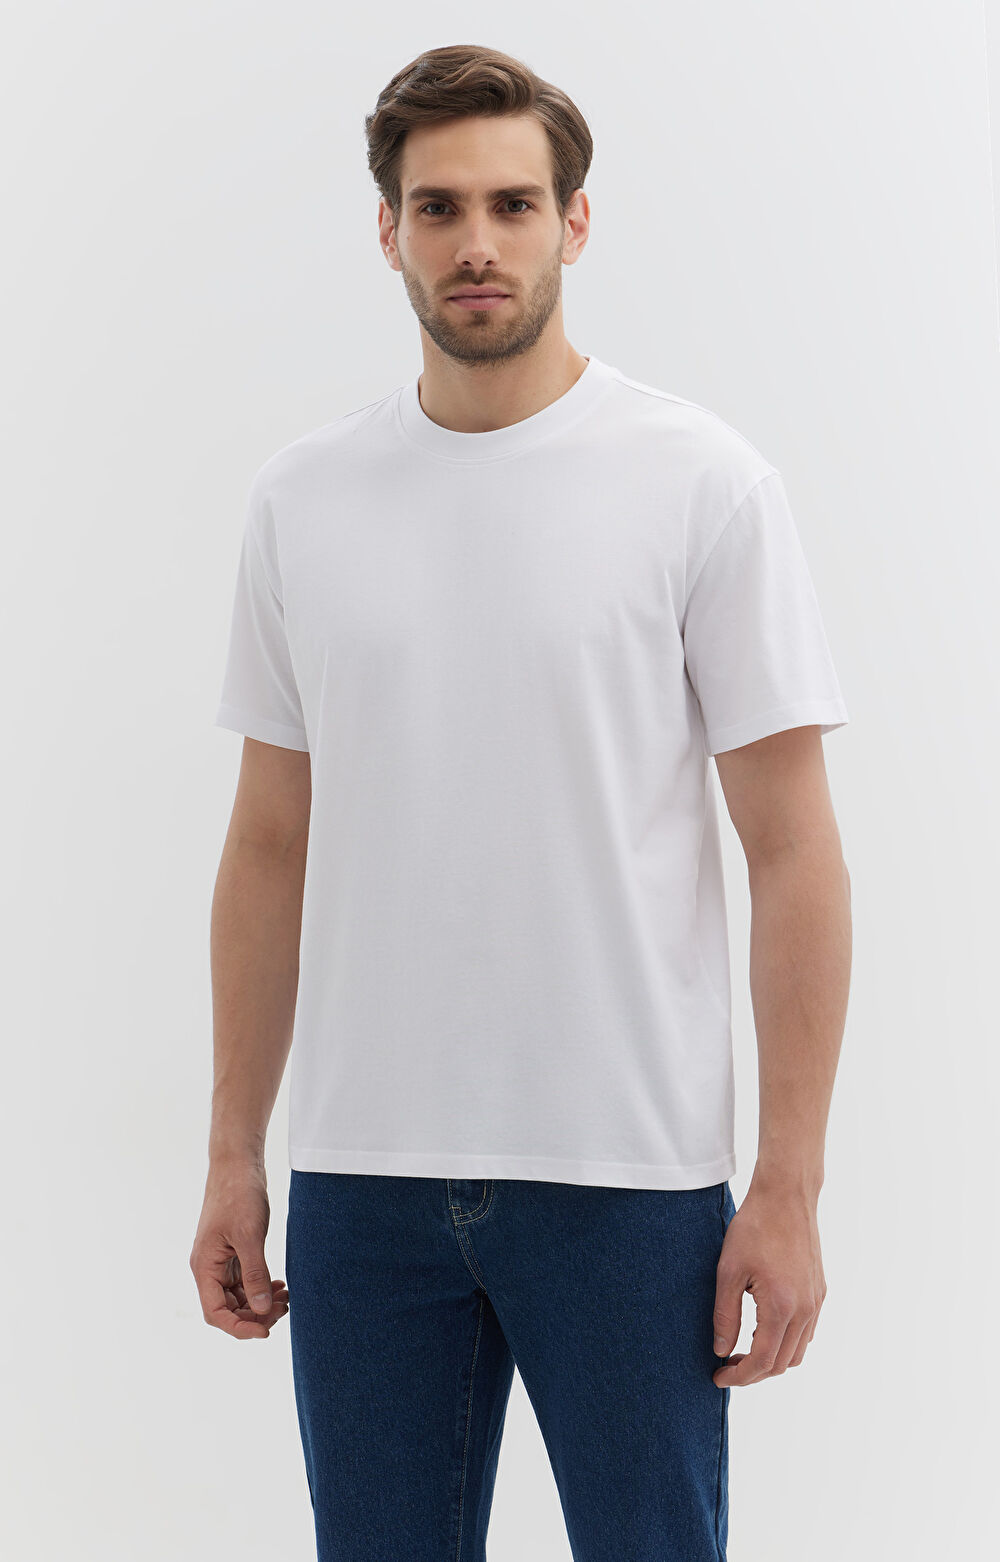 T-shirt męski o sylwetce luźnej z bawełny organicznej